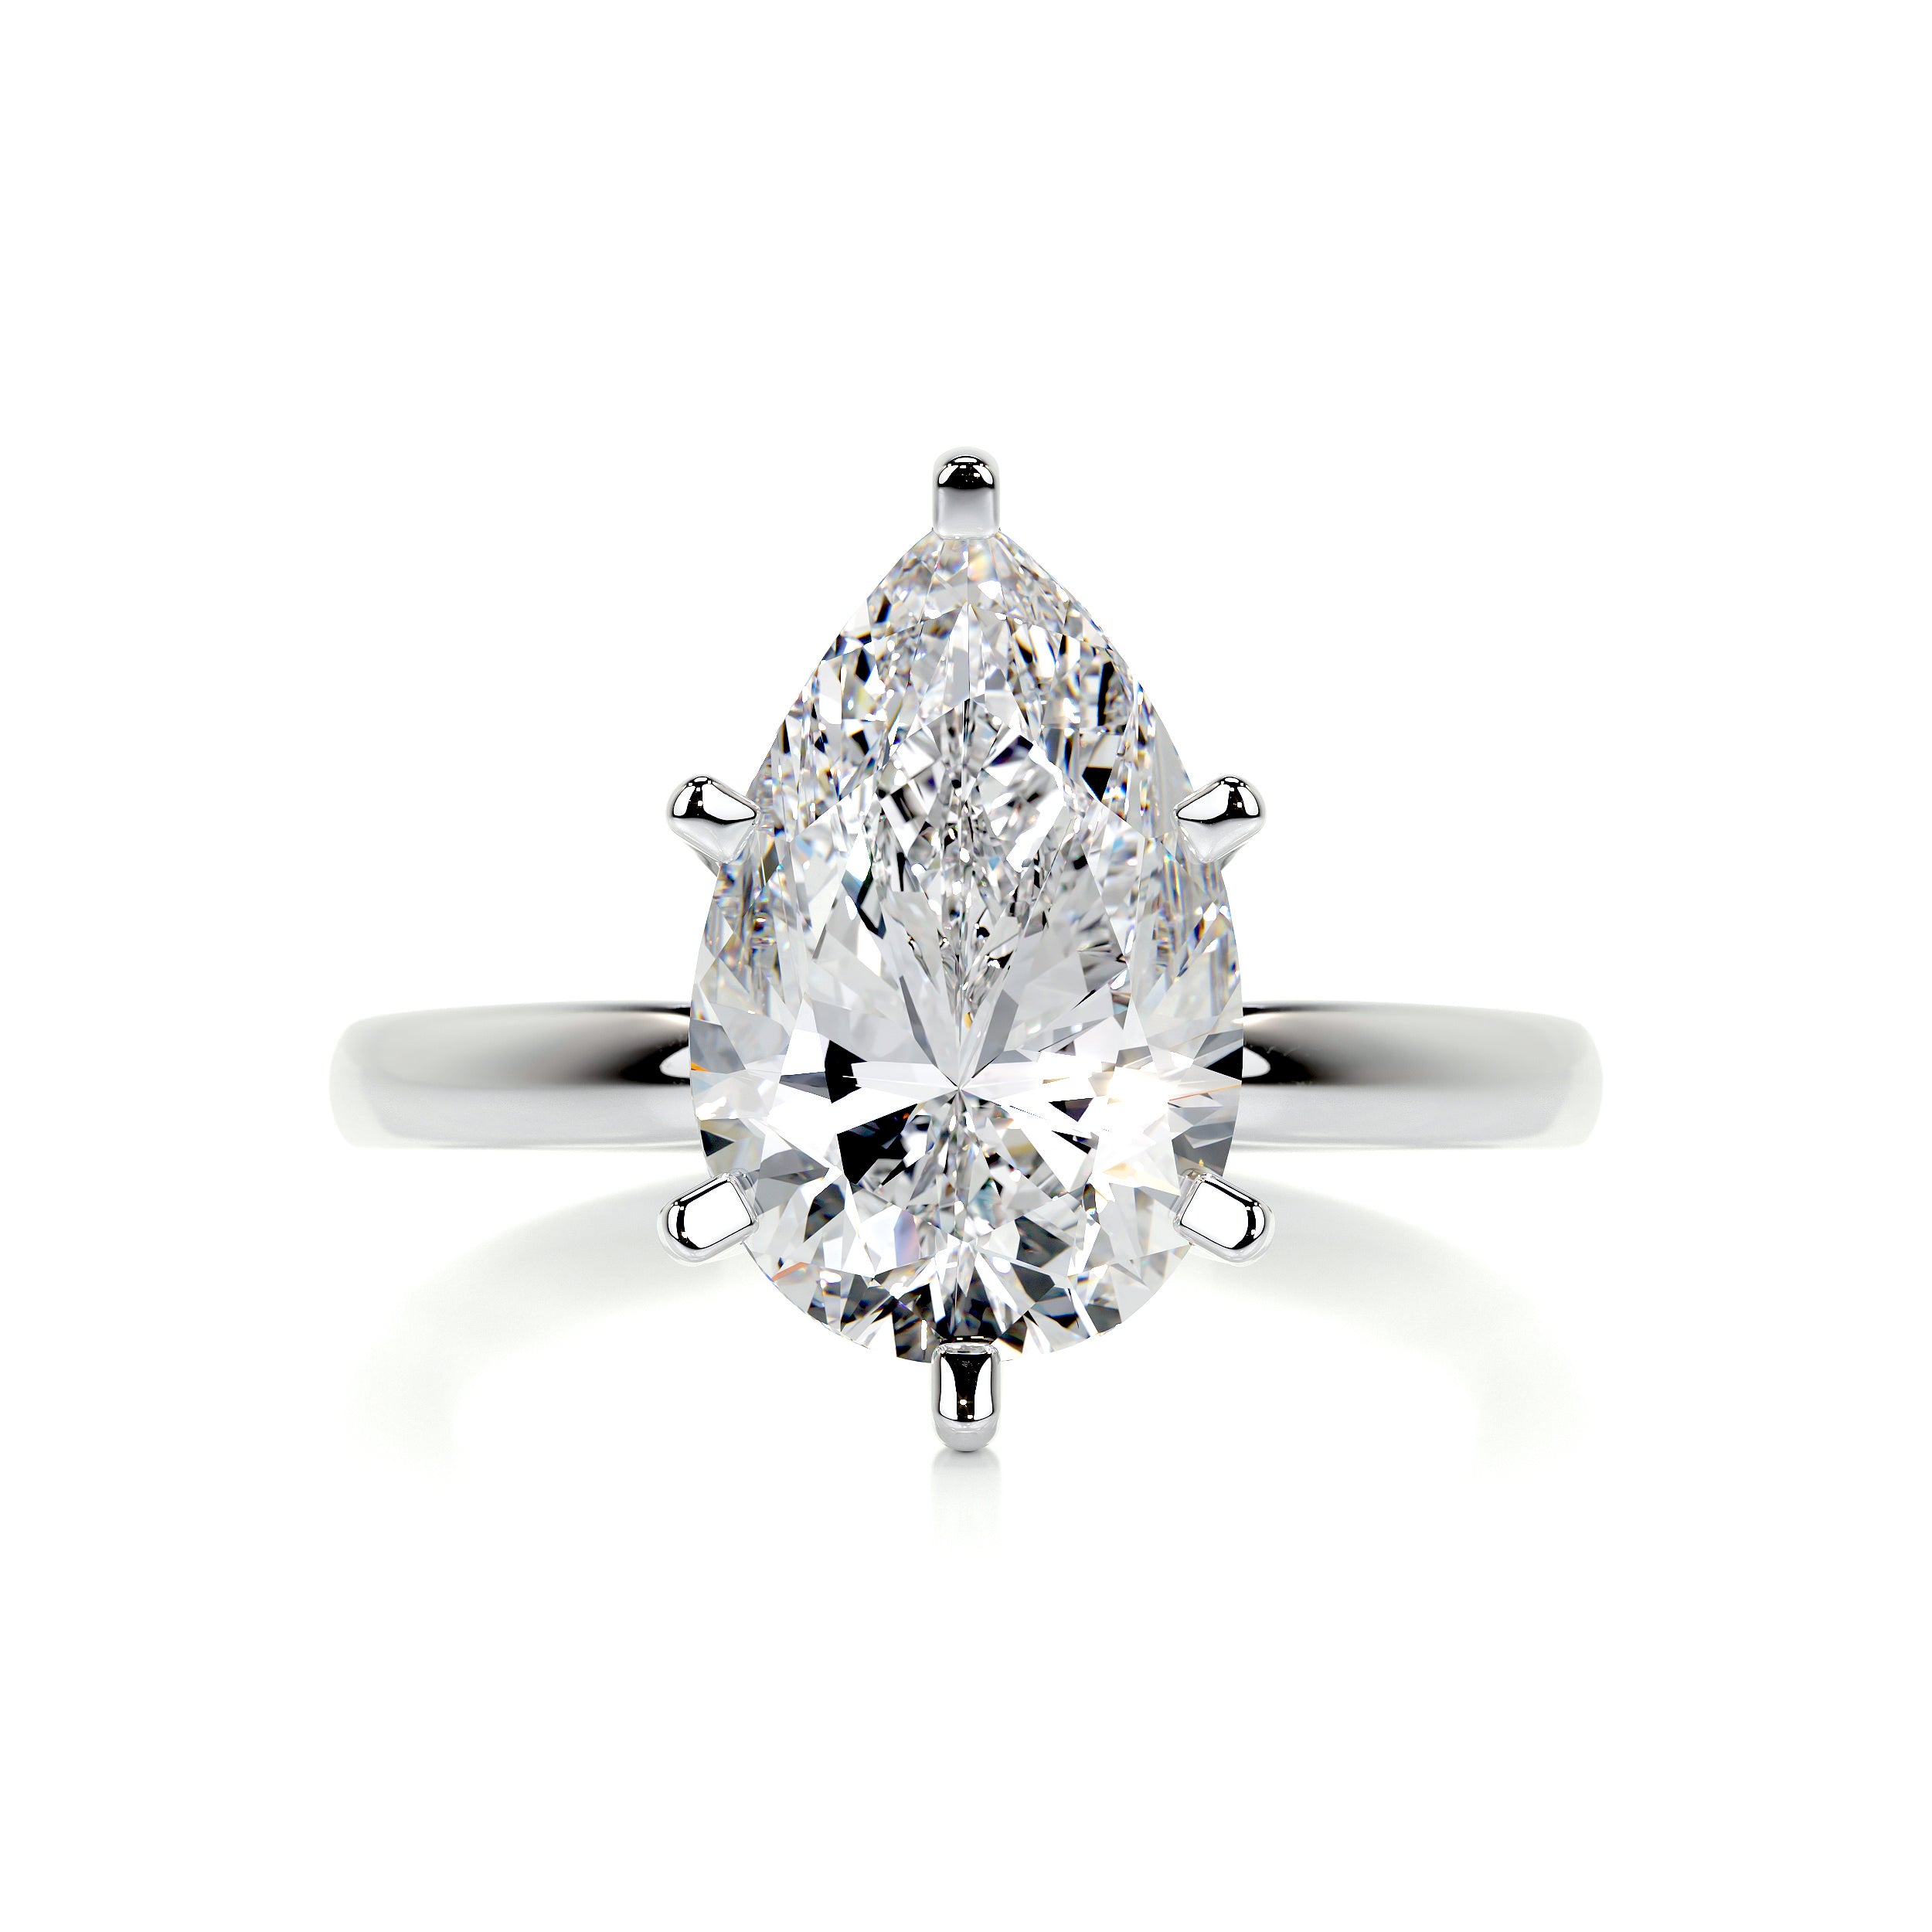 Adaline Diamond Engagement Ring   (1 Carat) -18K White Gold